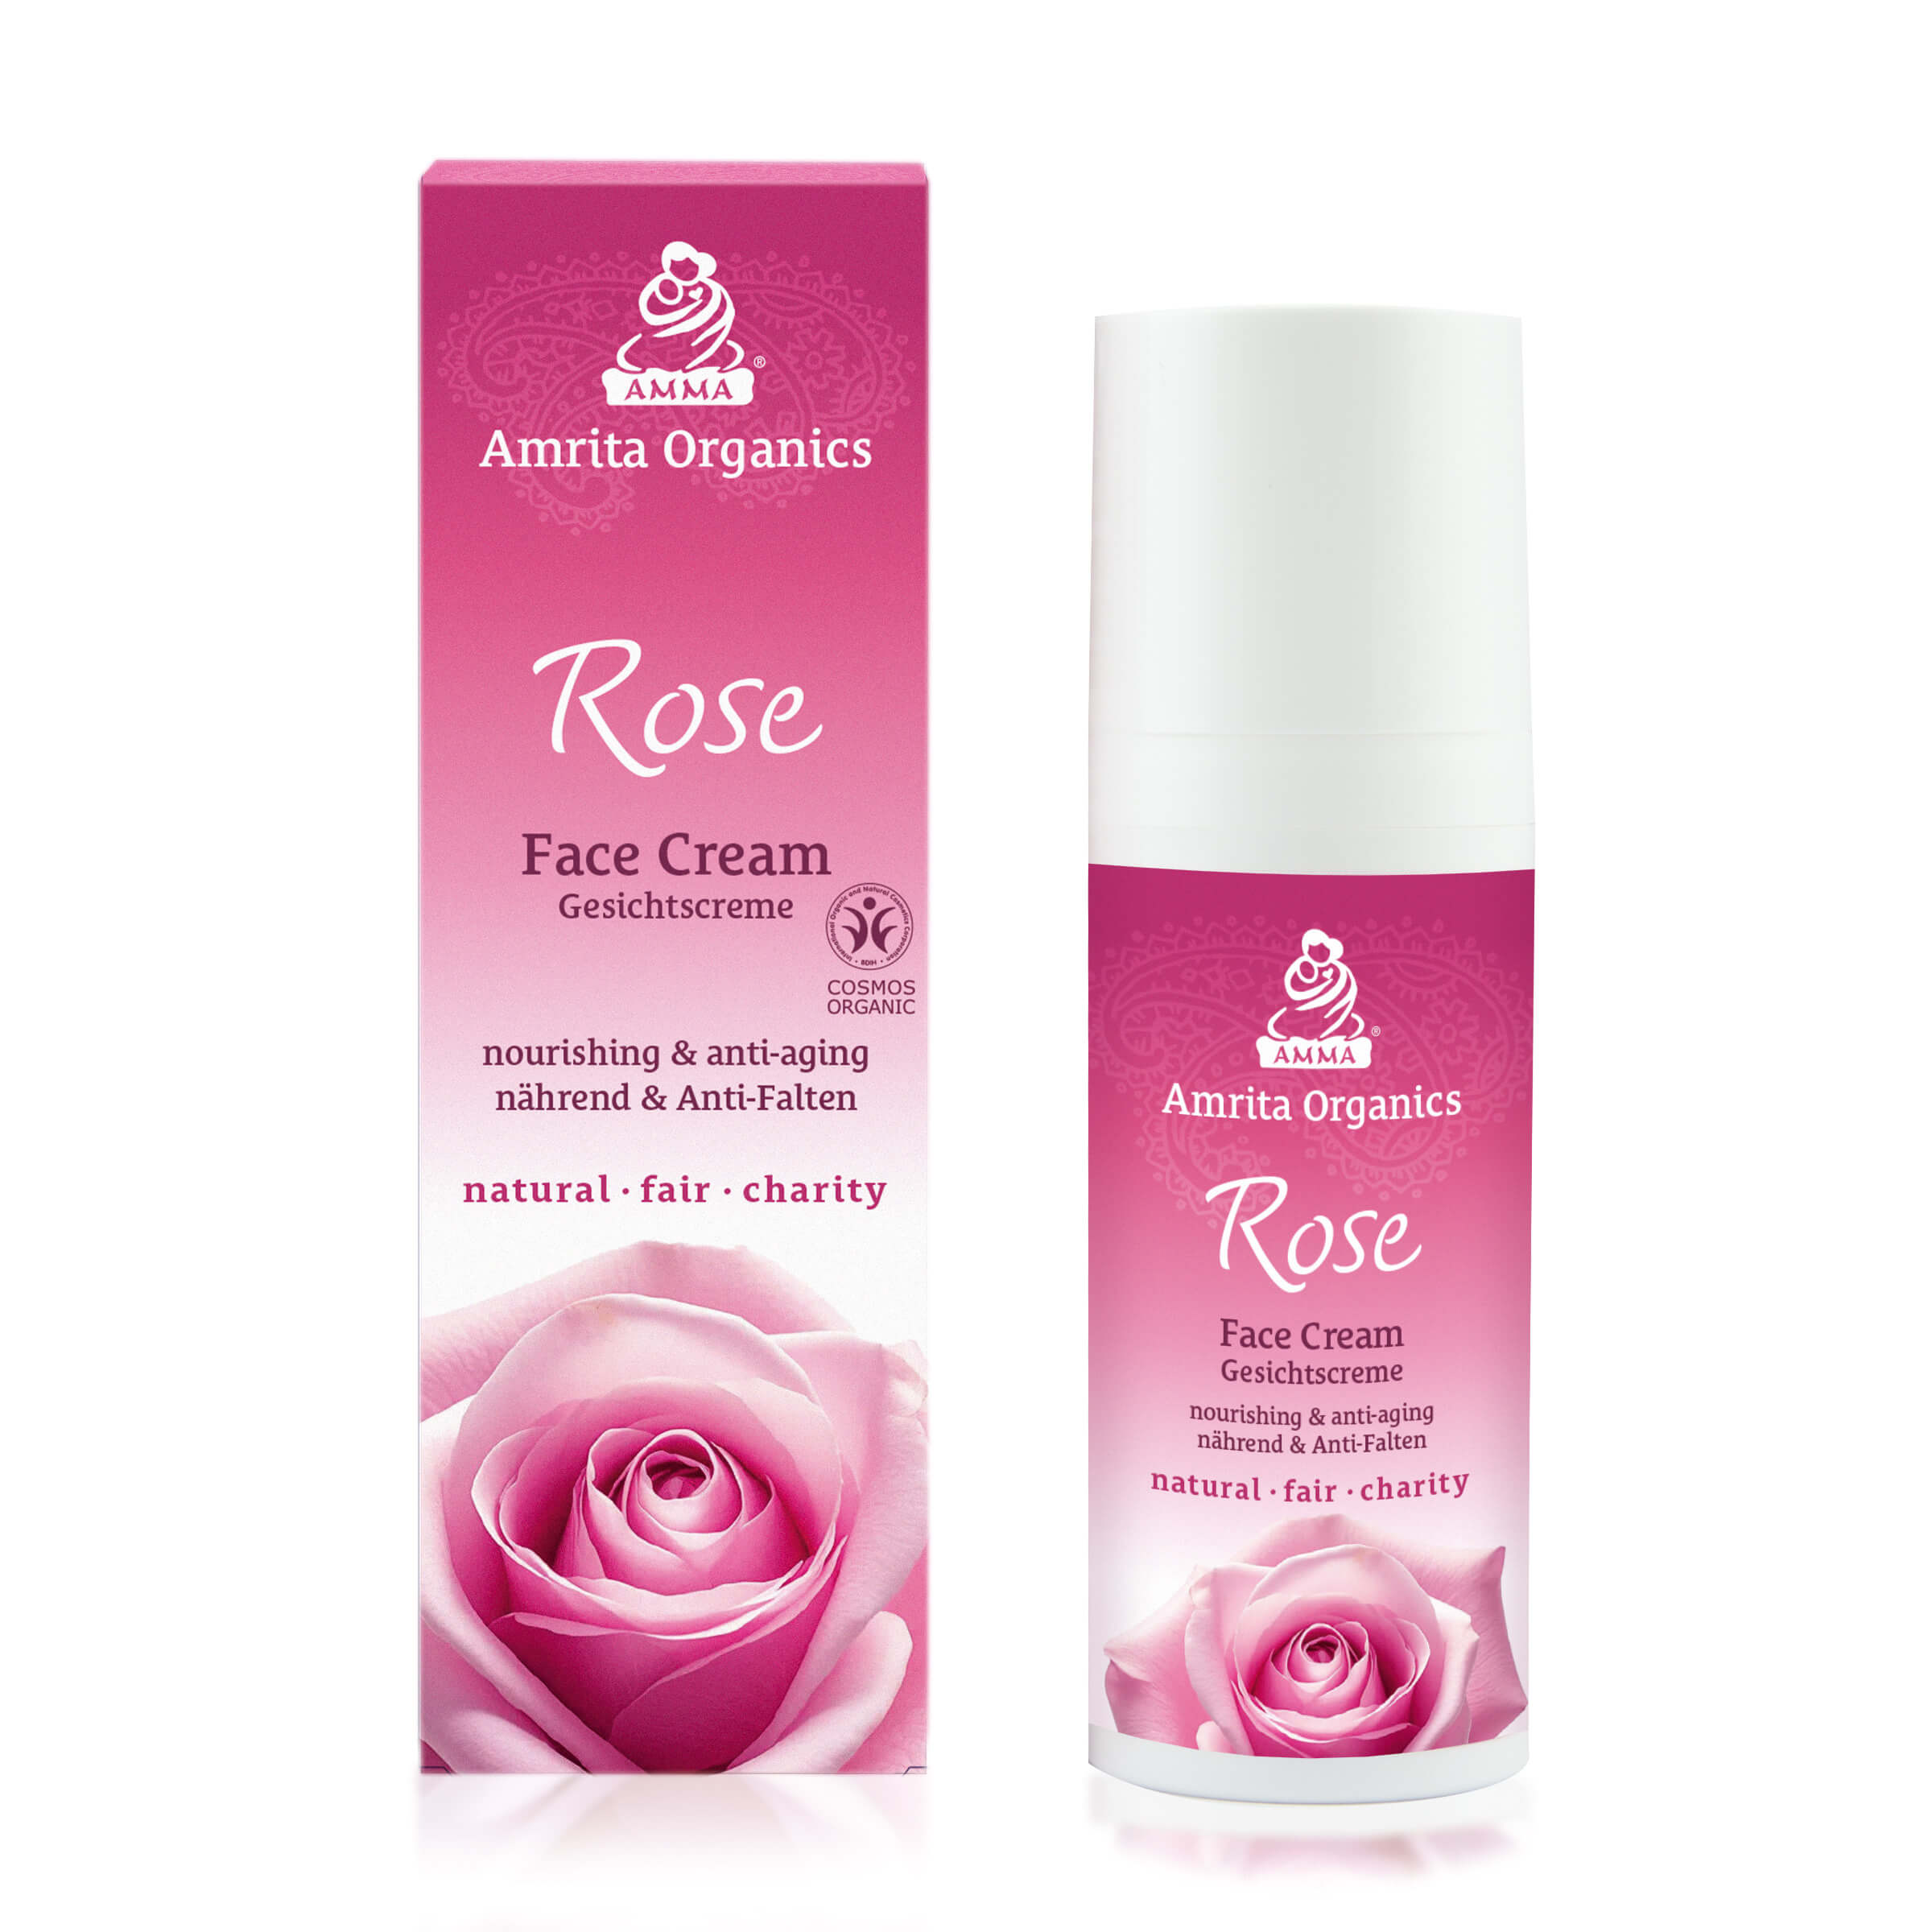 Rose Face Cream